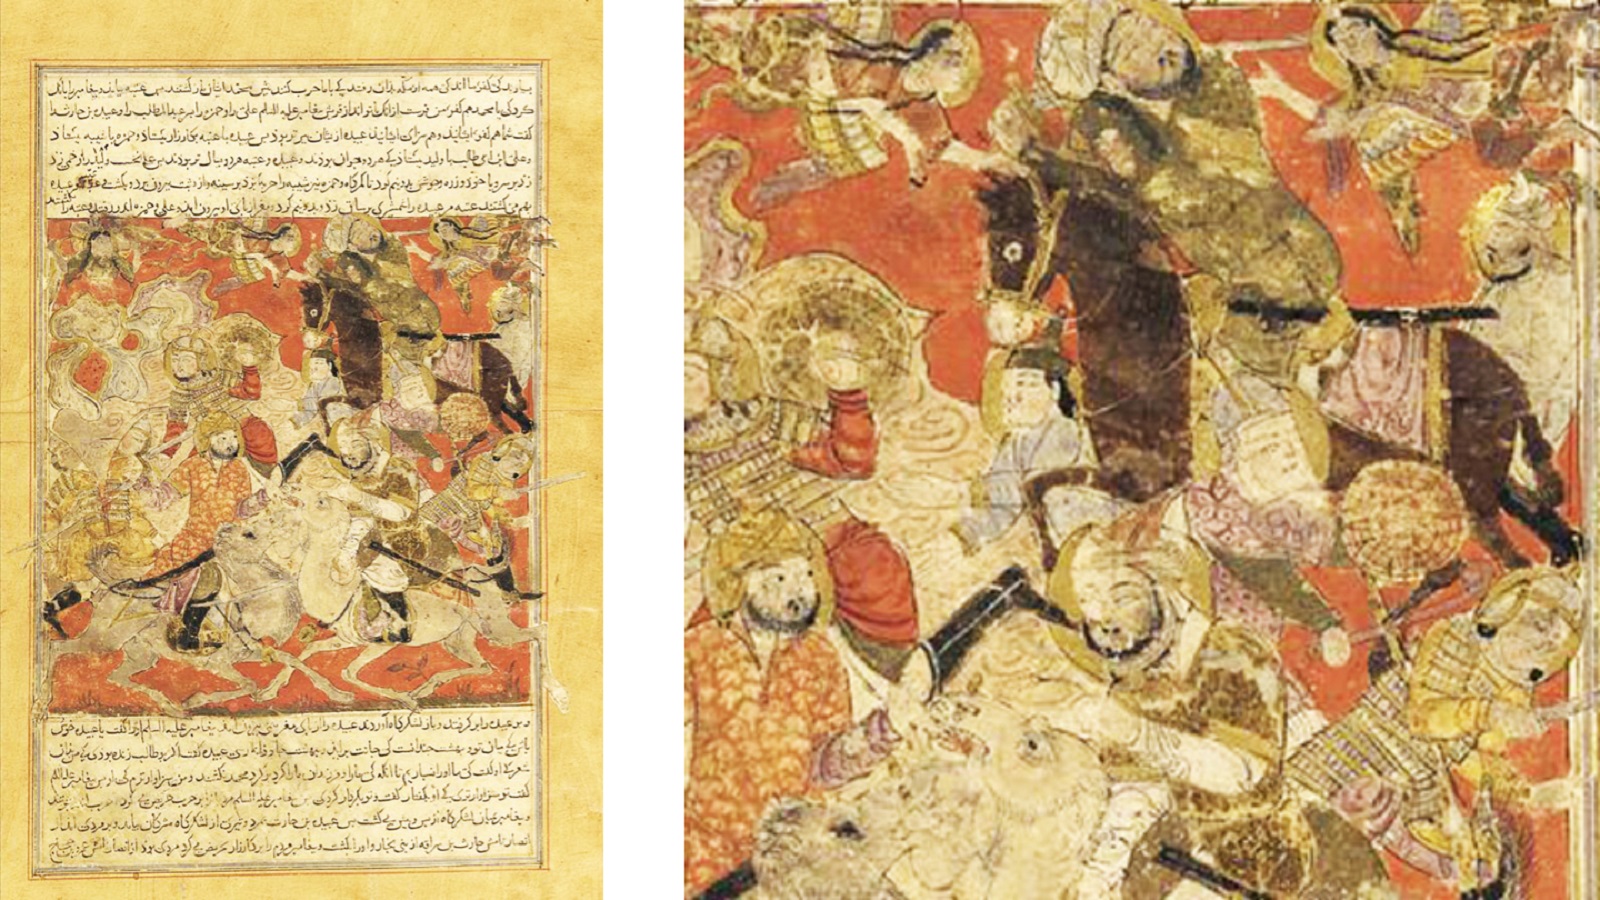 غزوة بد الكبرى، "تاريخ بلعمي"، مخطوط من النصف الأول من القرن الرابع عشر مصدره العراق على الأرجح، فرير غاليري، واشنطن.